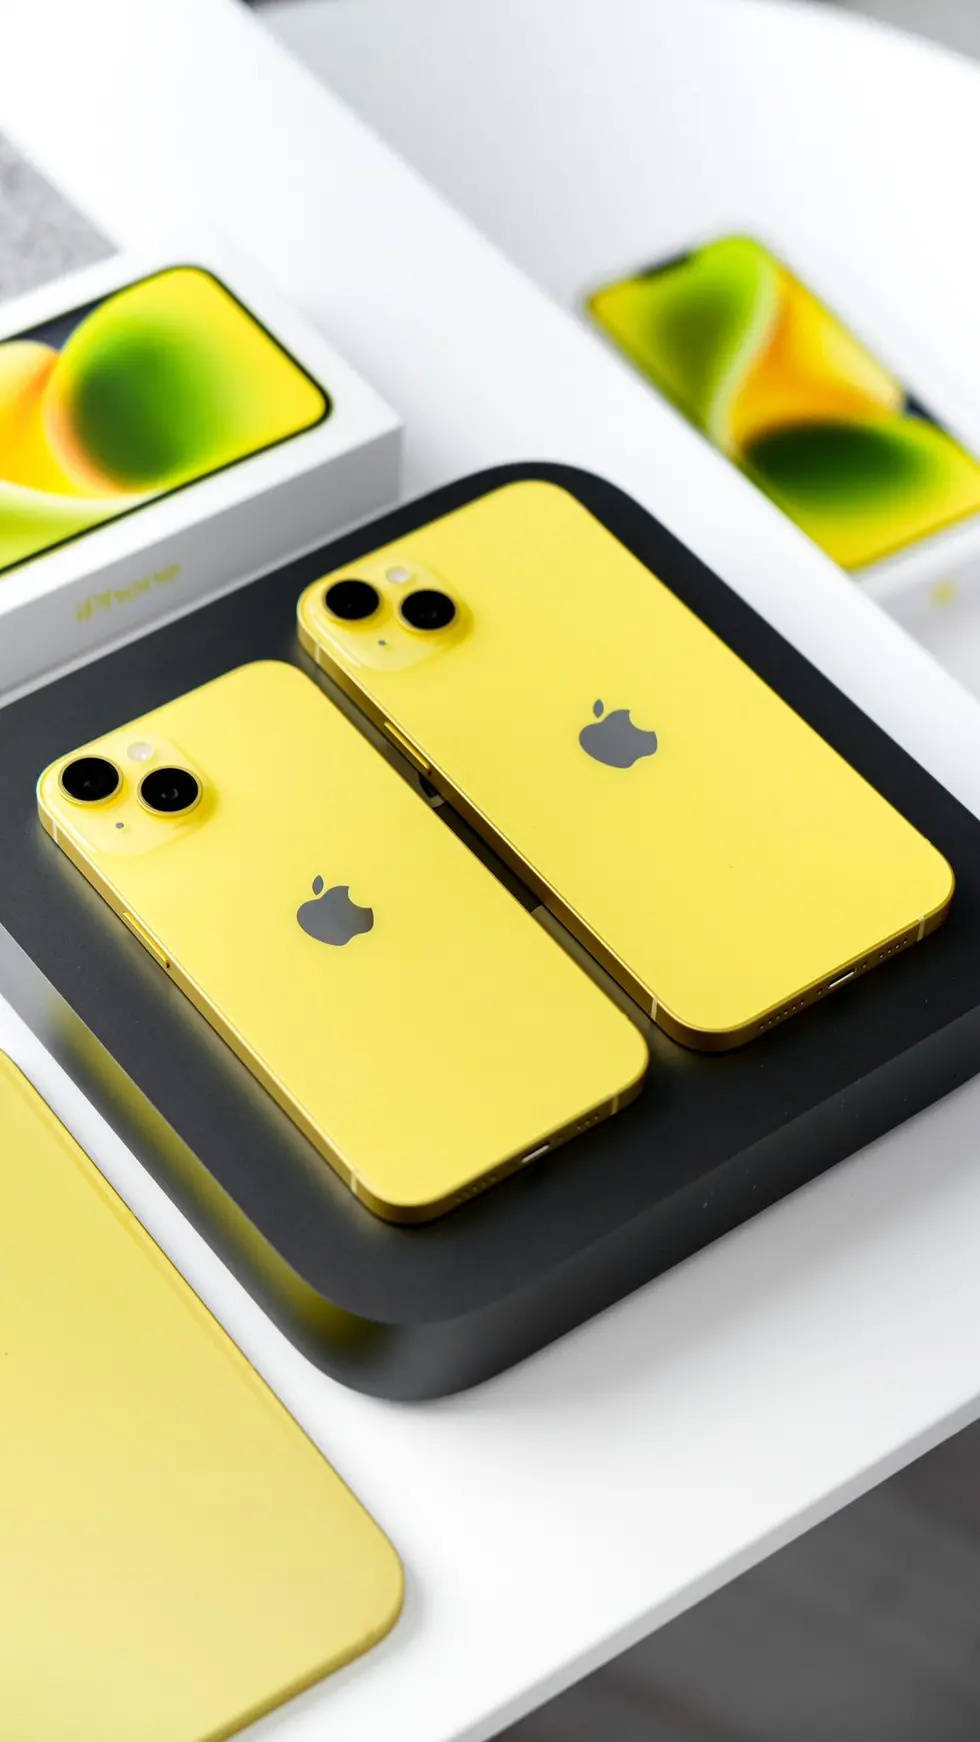 八爪鱼开箱视频下载苹果版:黄色版 iPhone 14/14 Plus 手机开箱视频和图片曝光-第4张图片-太平洋在线下载